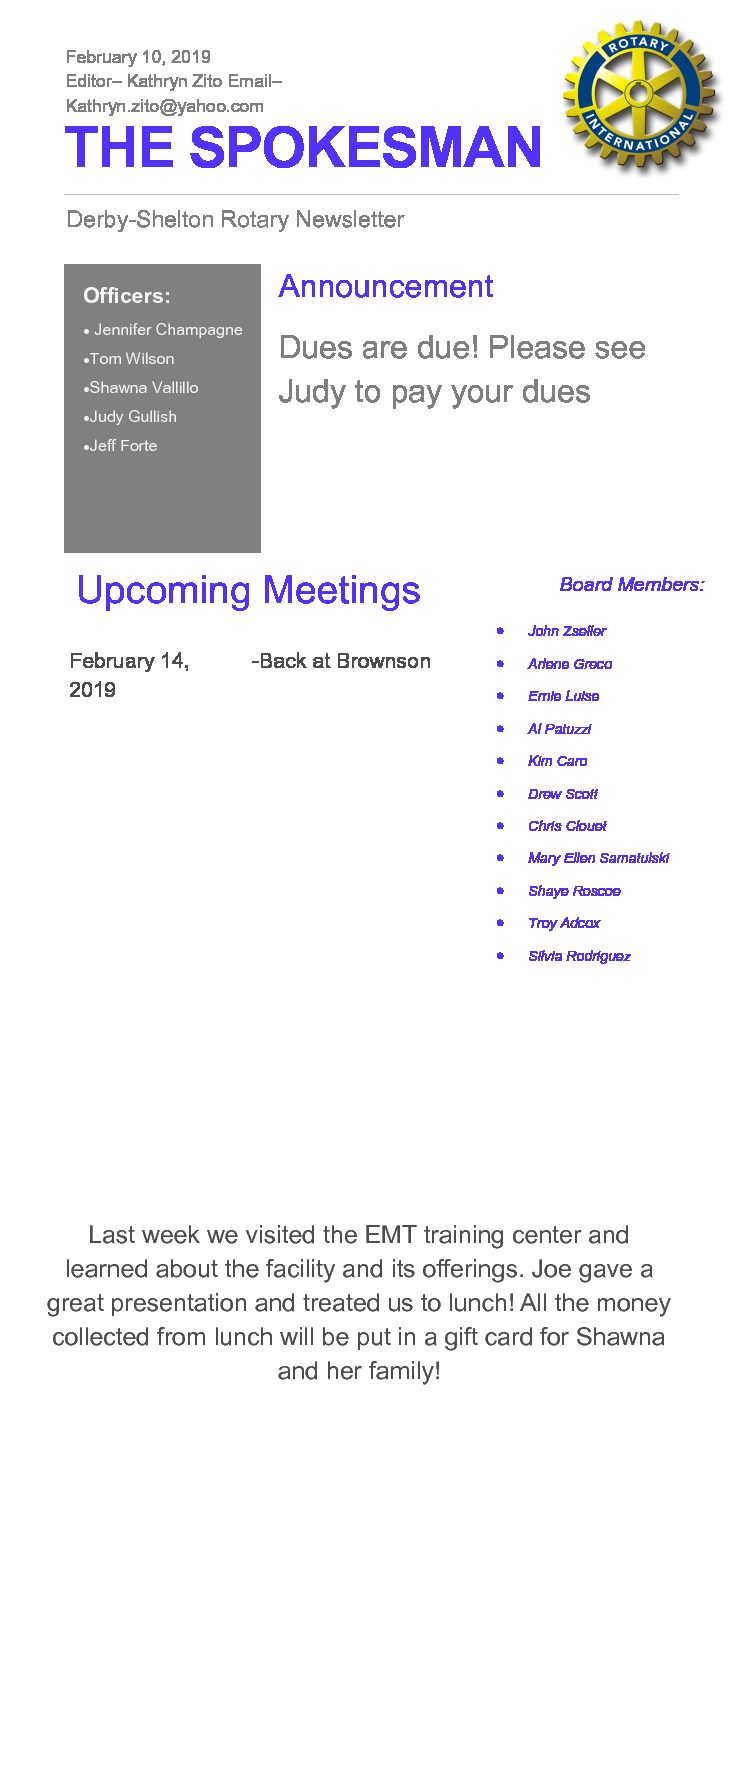 Weekly Meeting - in person this week!